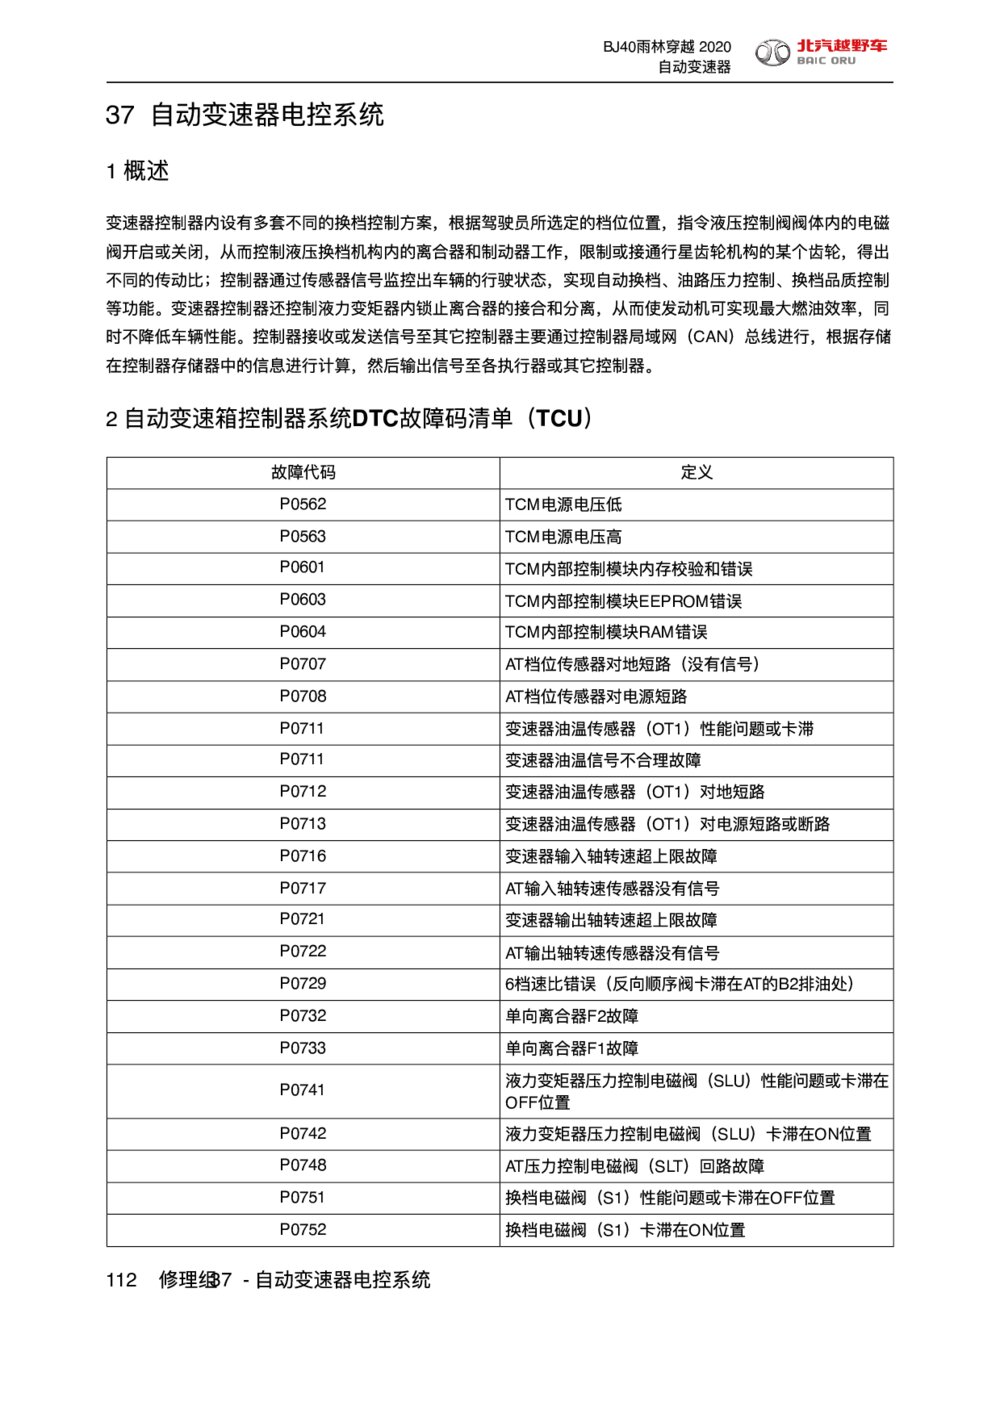 2020款北京BJ40自动变速器电控系统概述